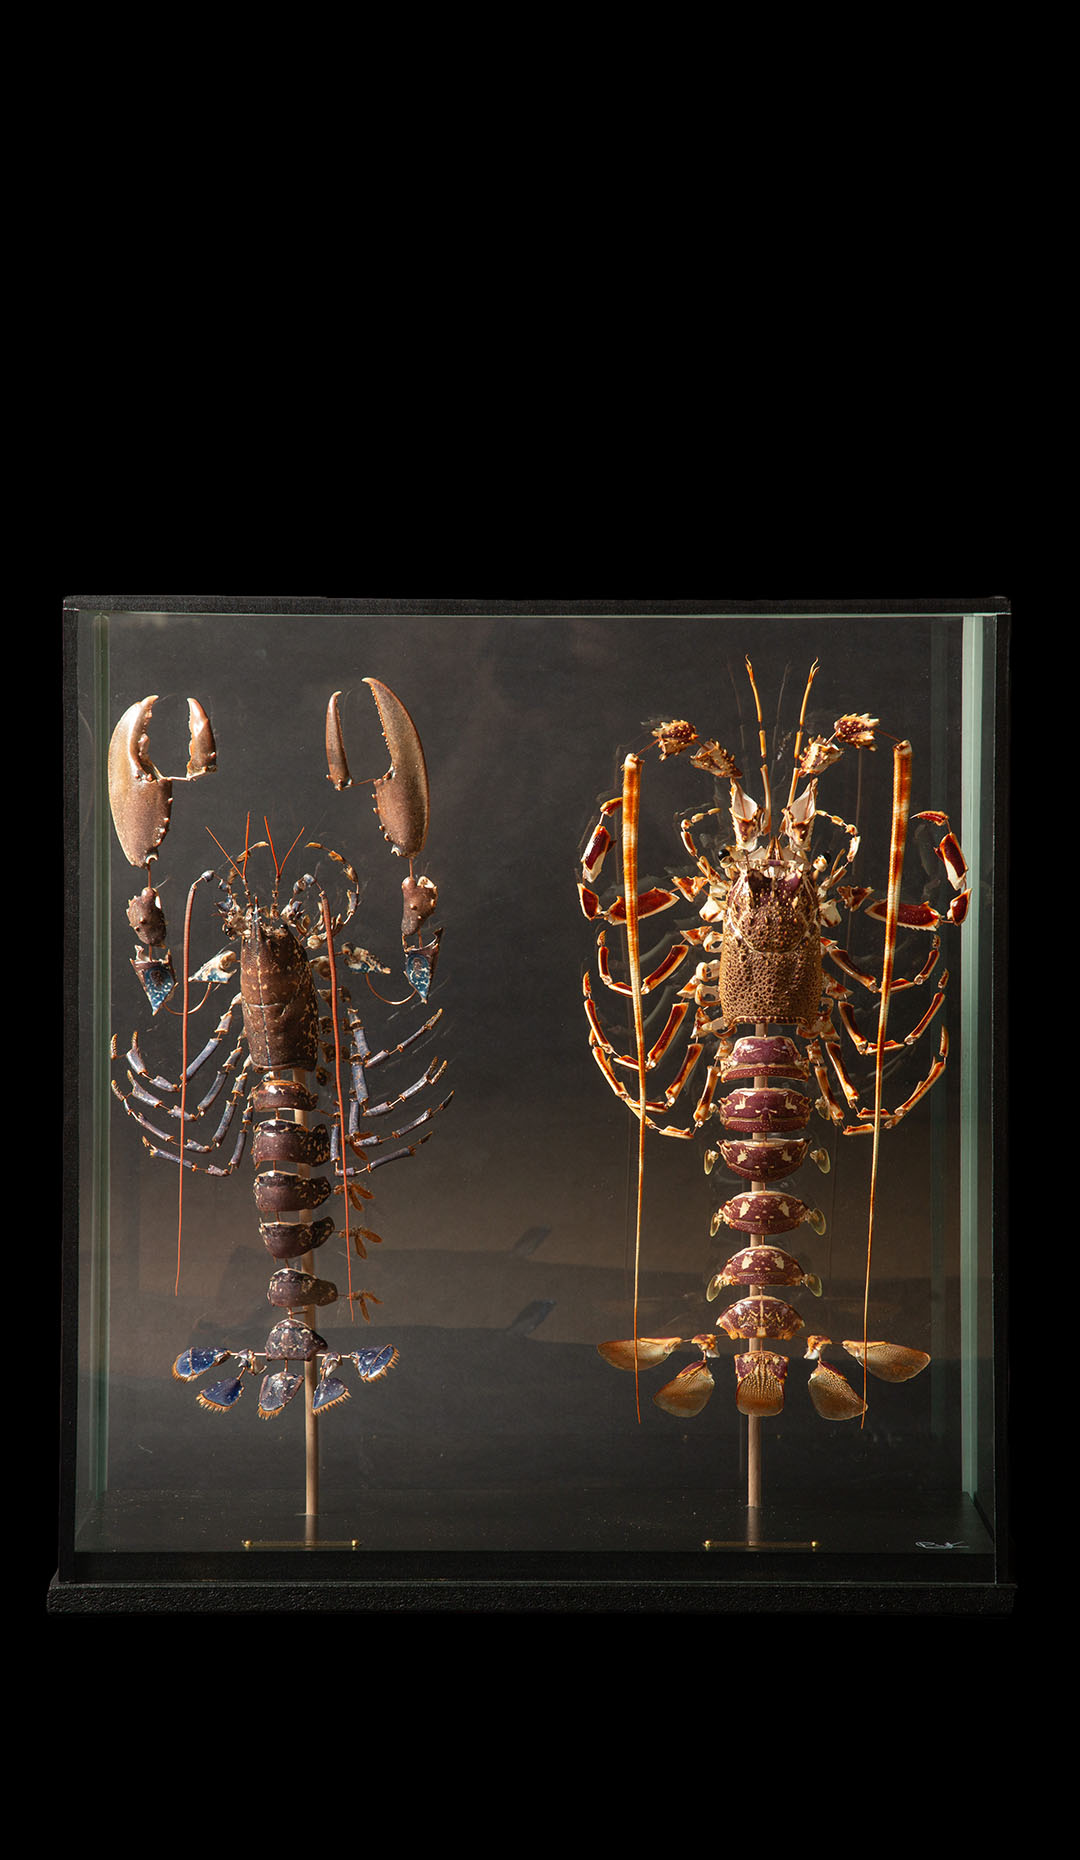 Deconstructed Lobster Pair (Homeras Gammarus) (Palinurus Elephas) Under Glass